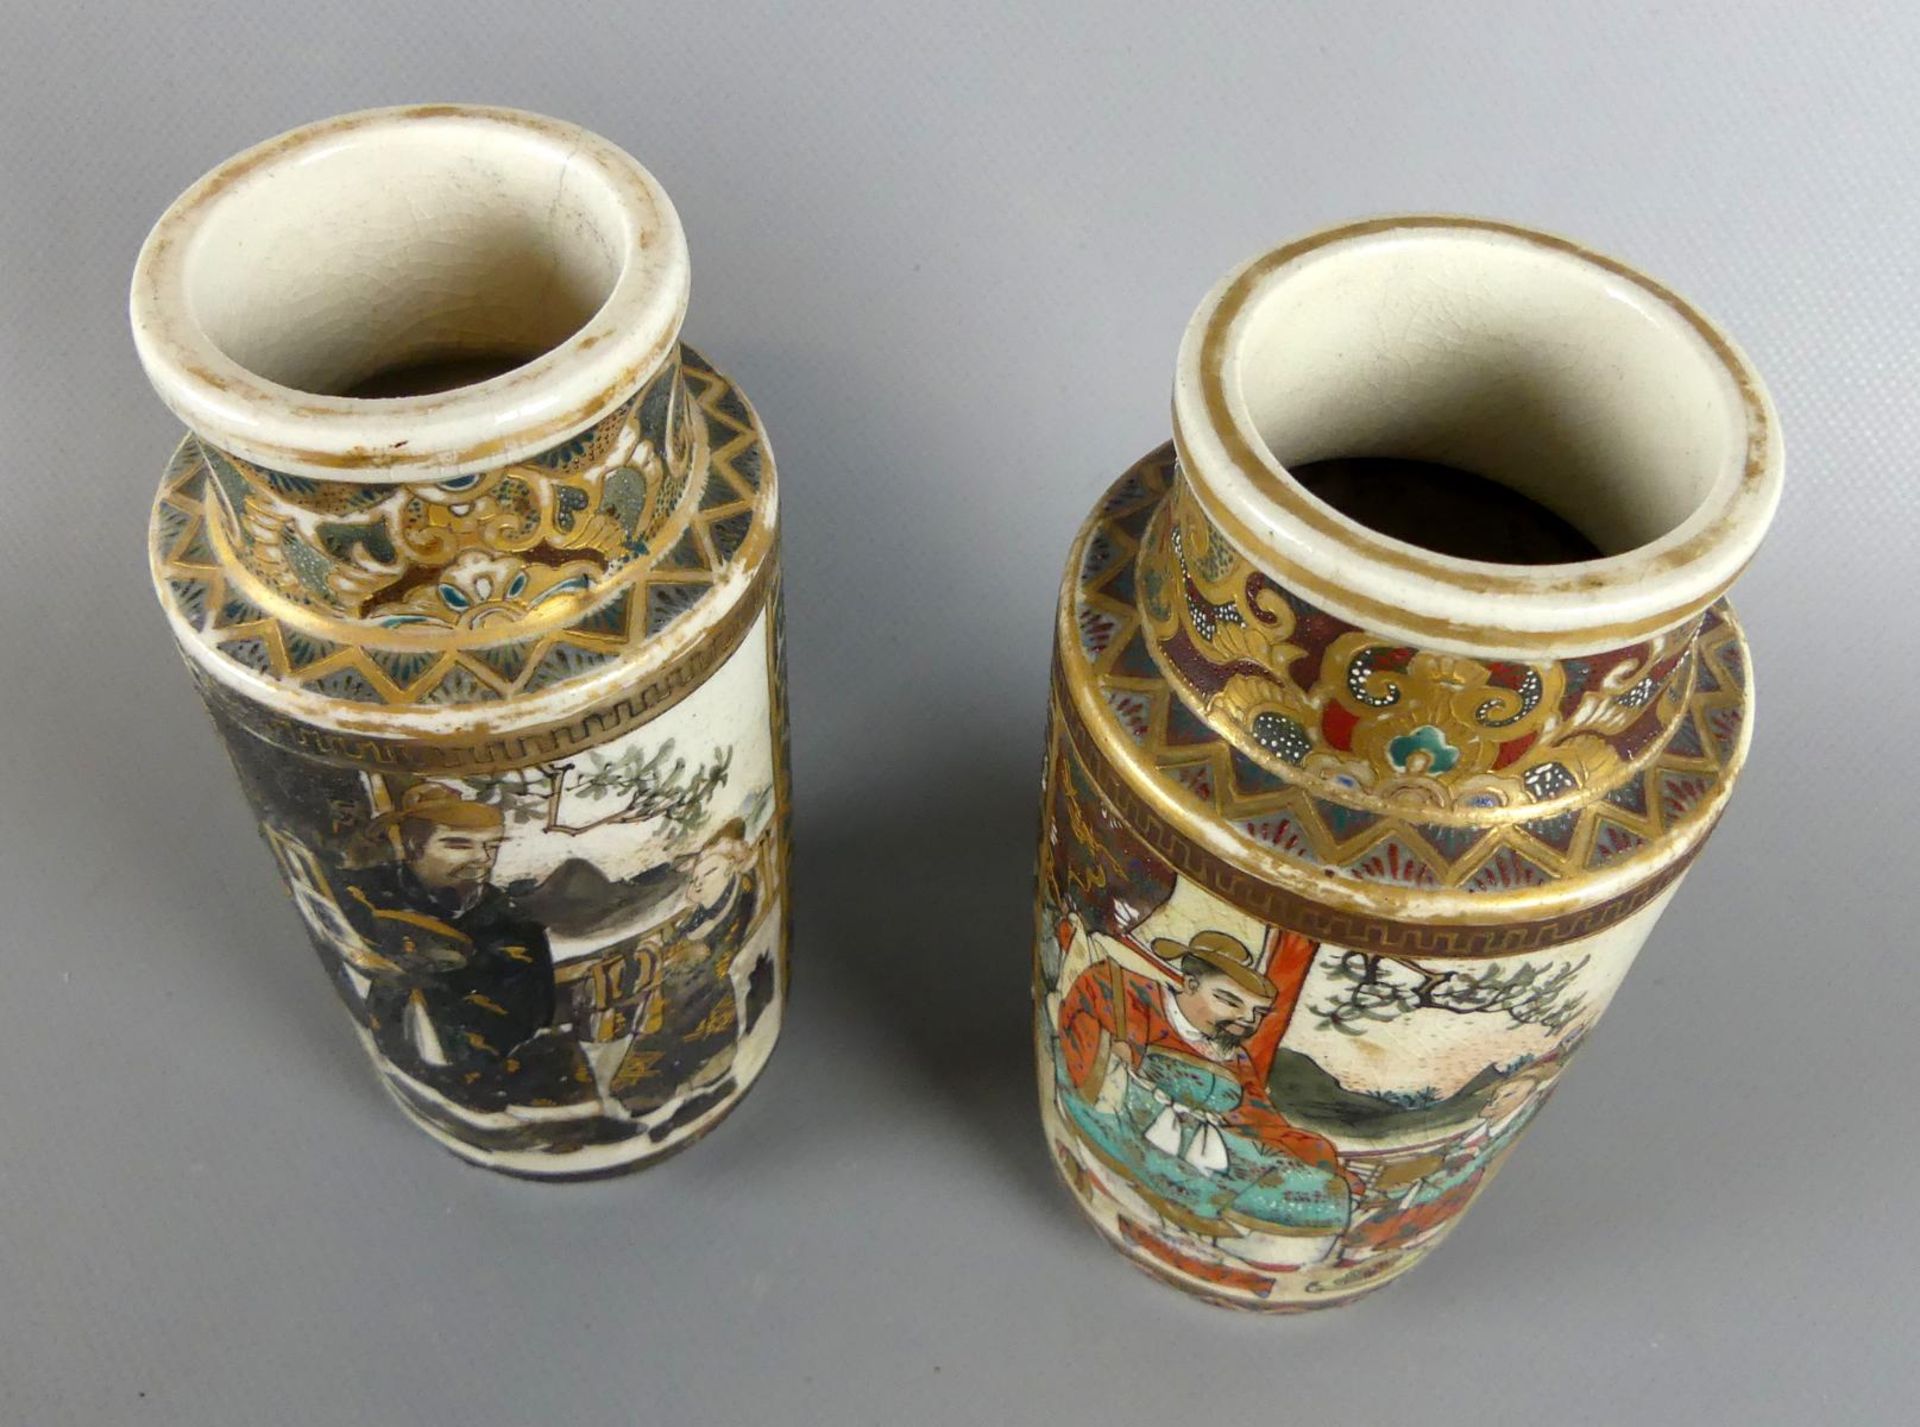 Paar Vasen, Cloisonné, verschiedene asiatische Darstellungen, - Bild 2 aus 2